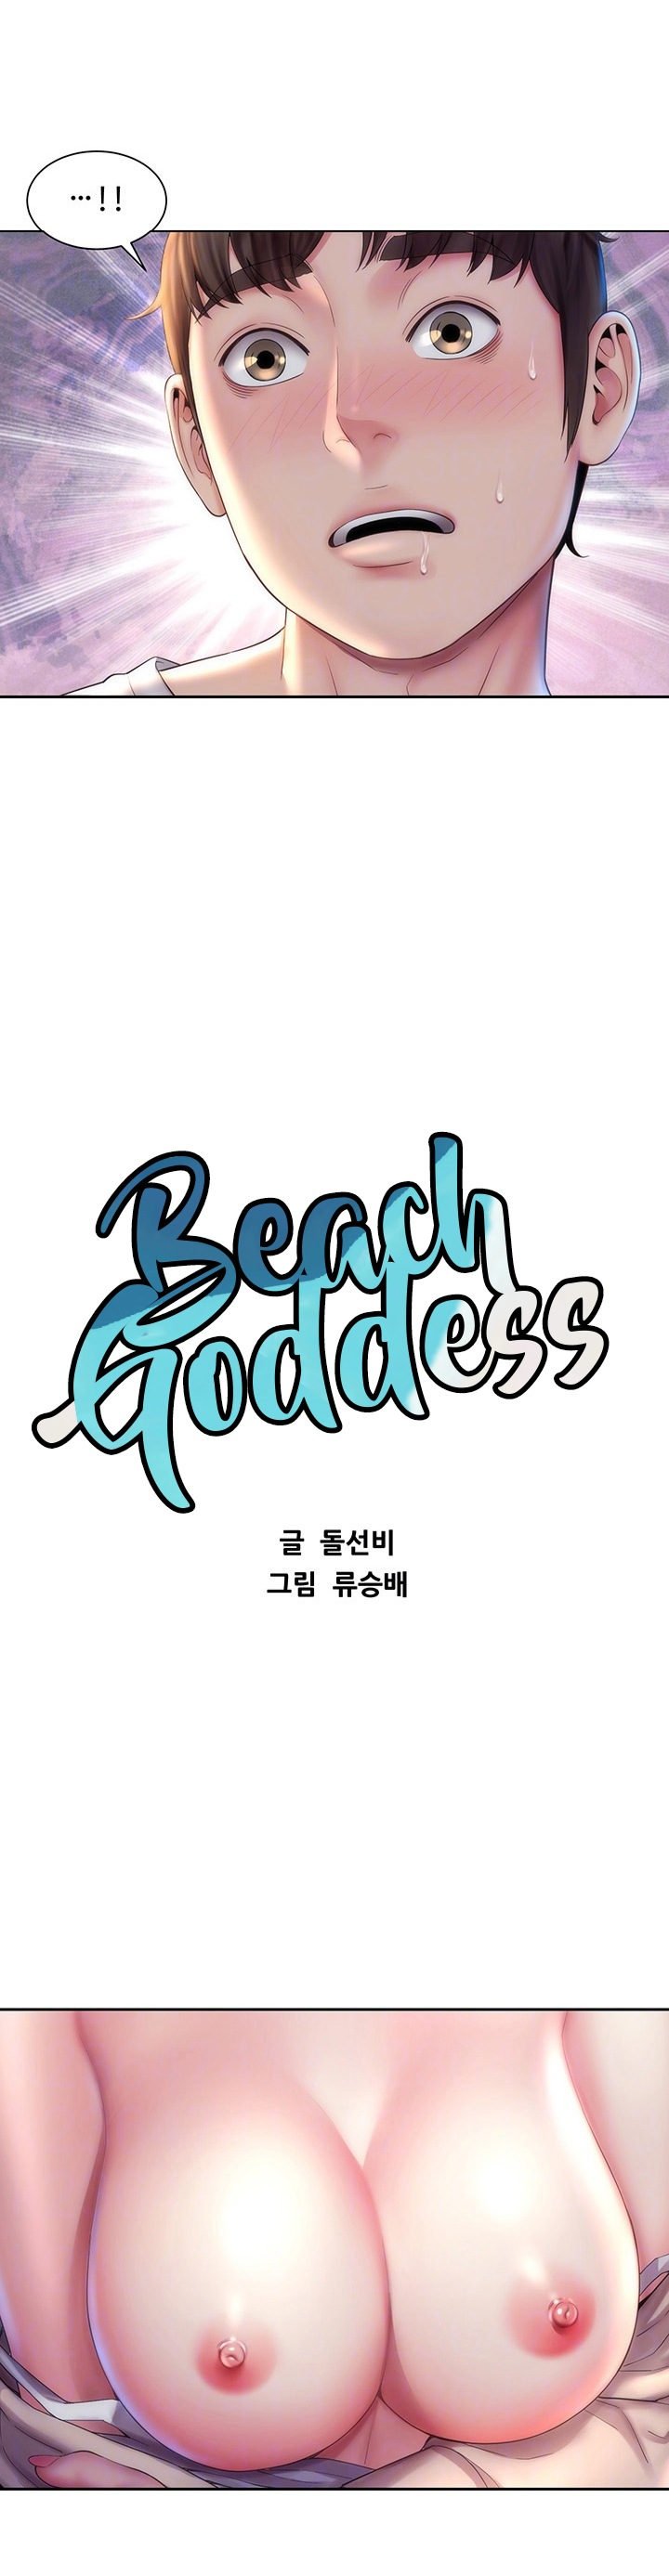 beach-goddess-chap-8-2